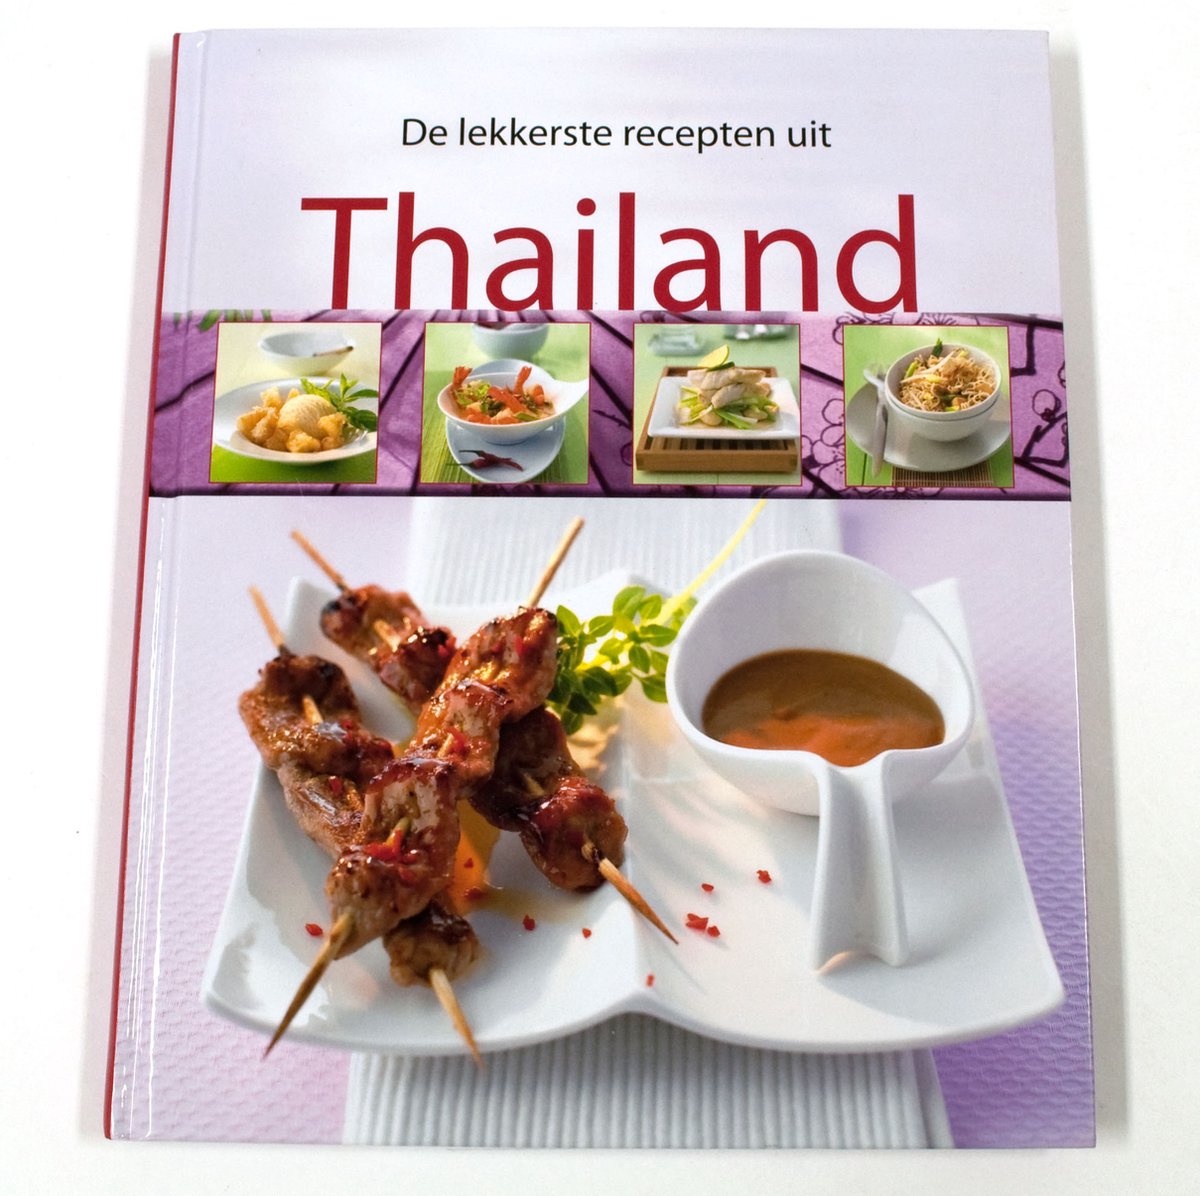 De lekkerste recepten uit Thailand